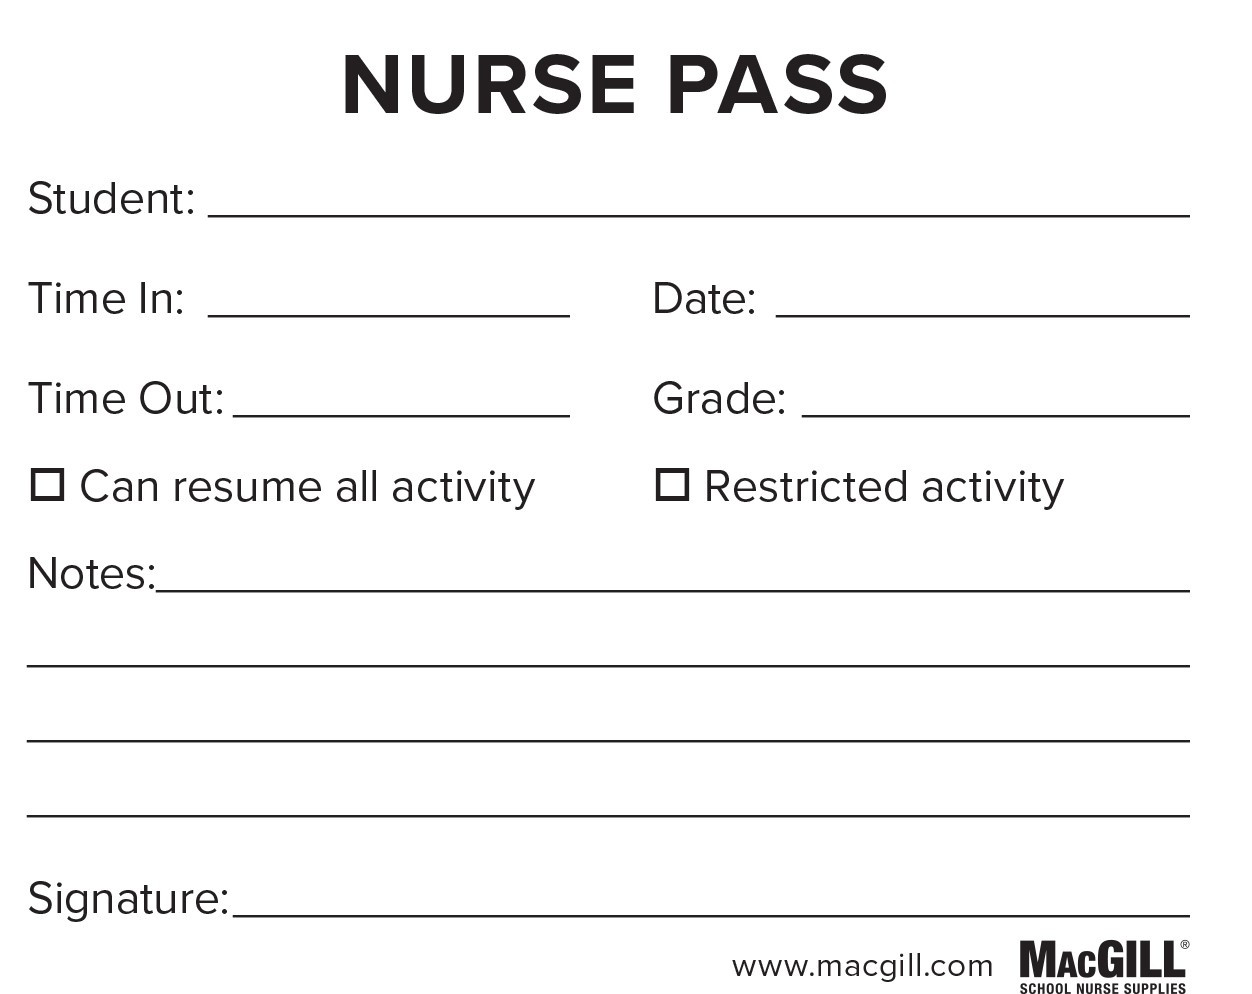 macgill-macgill-nurse-pass-50-sheets-per-pad